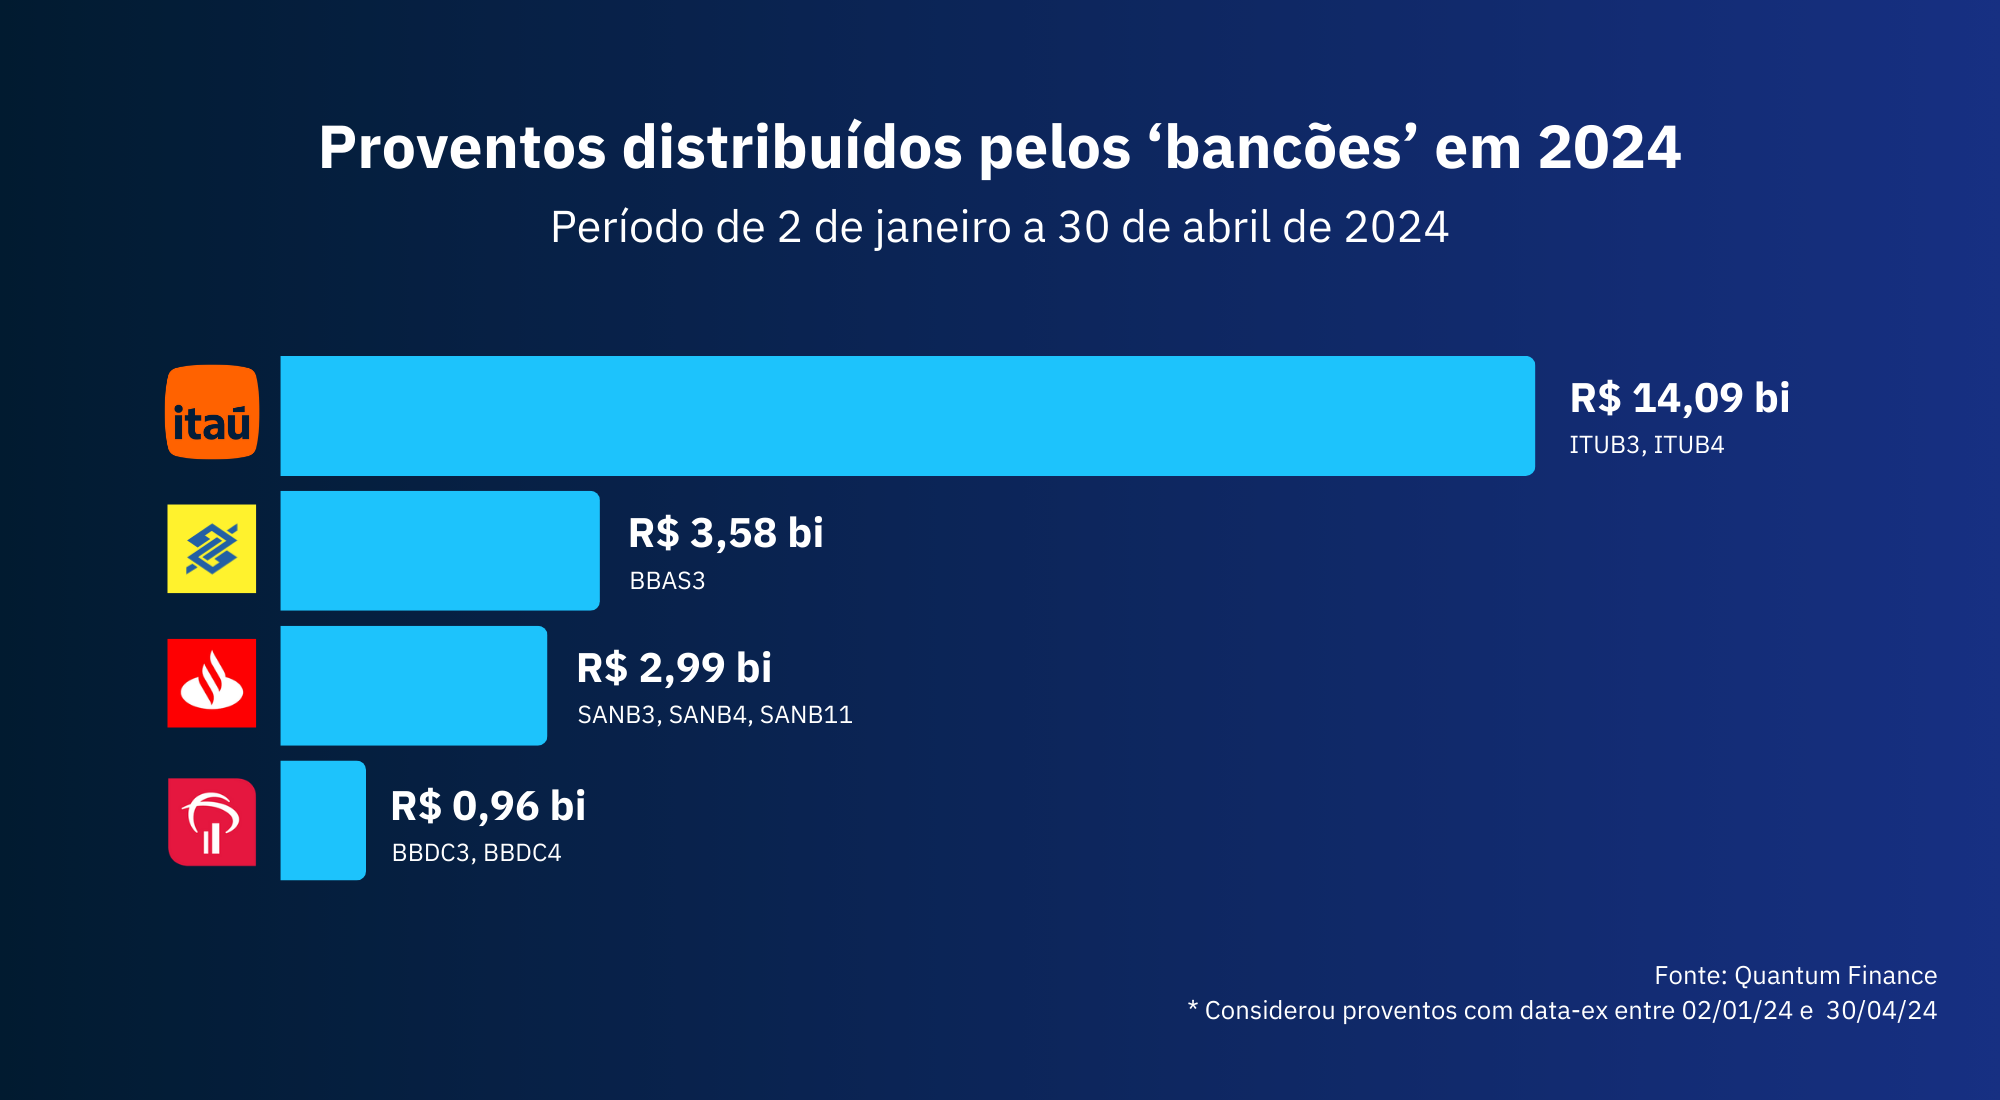 Dividendos de bancos: Itaú lidera pagamentos em 2024